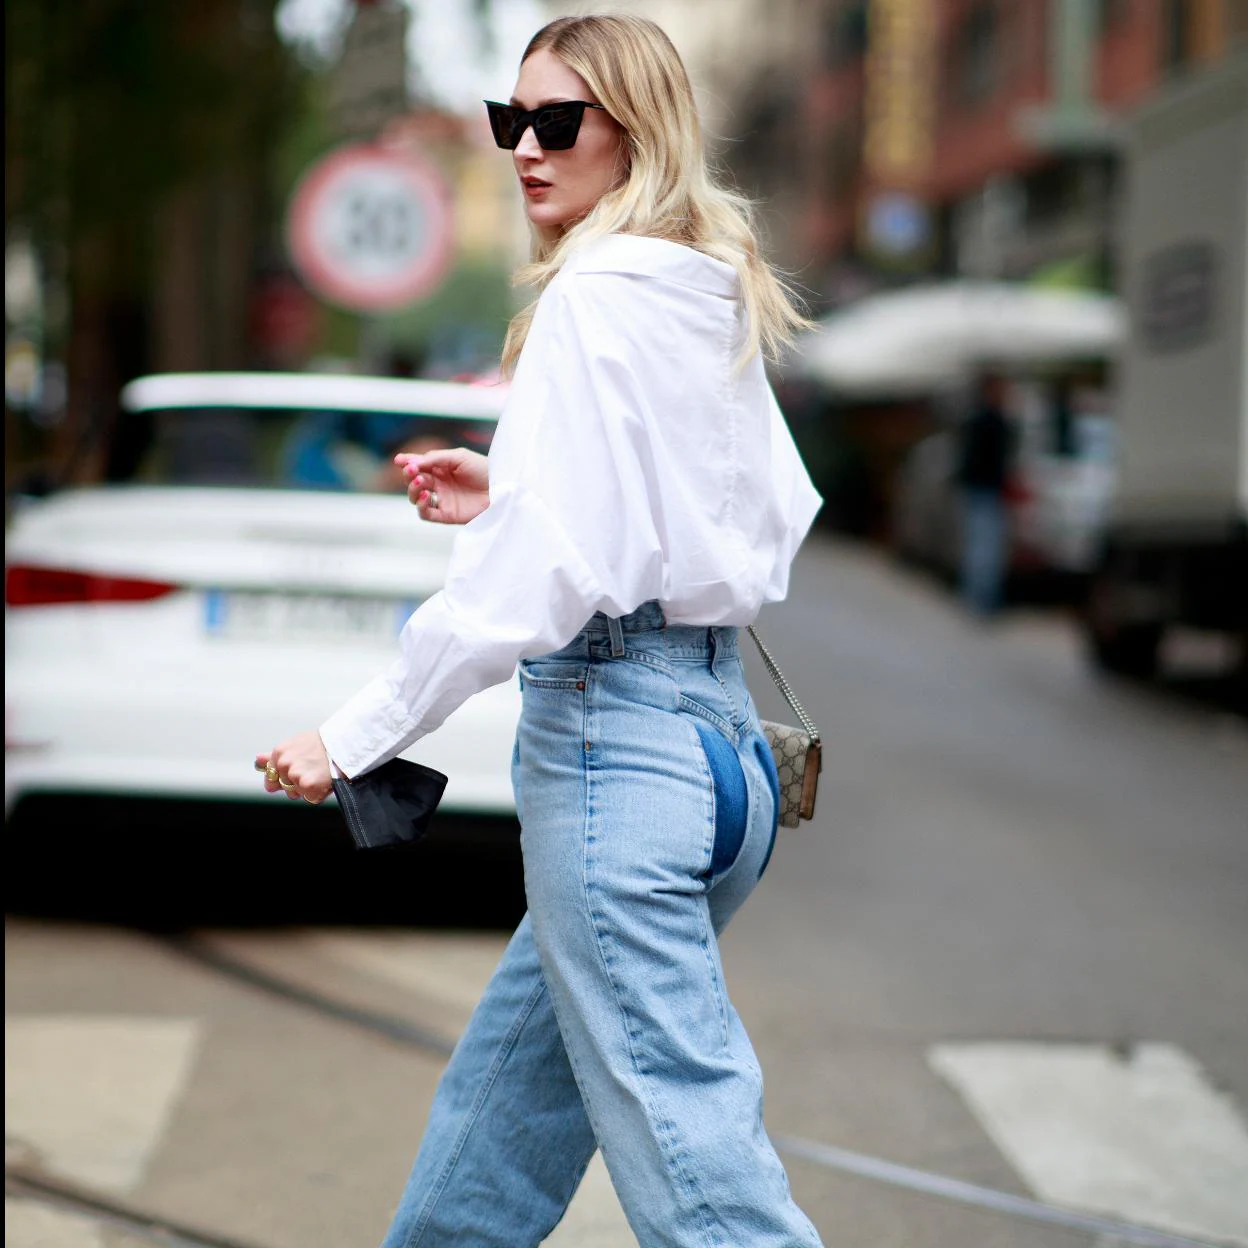 Han llegado a Zara los pantalones vaqueros que mejor sientan: el modelo  recto más vendido que todas quieren